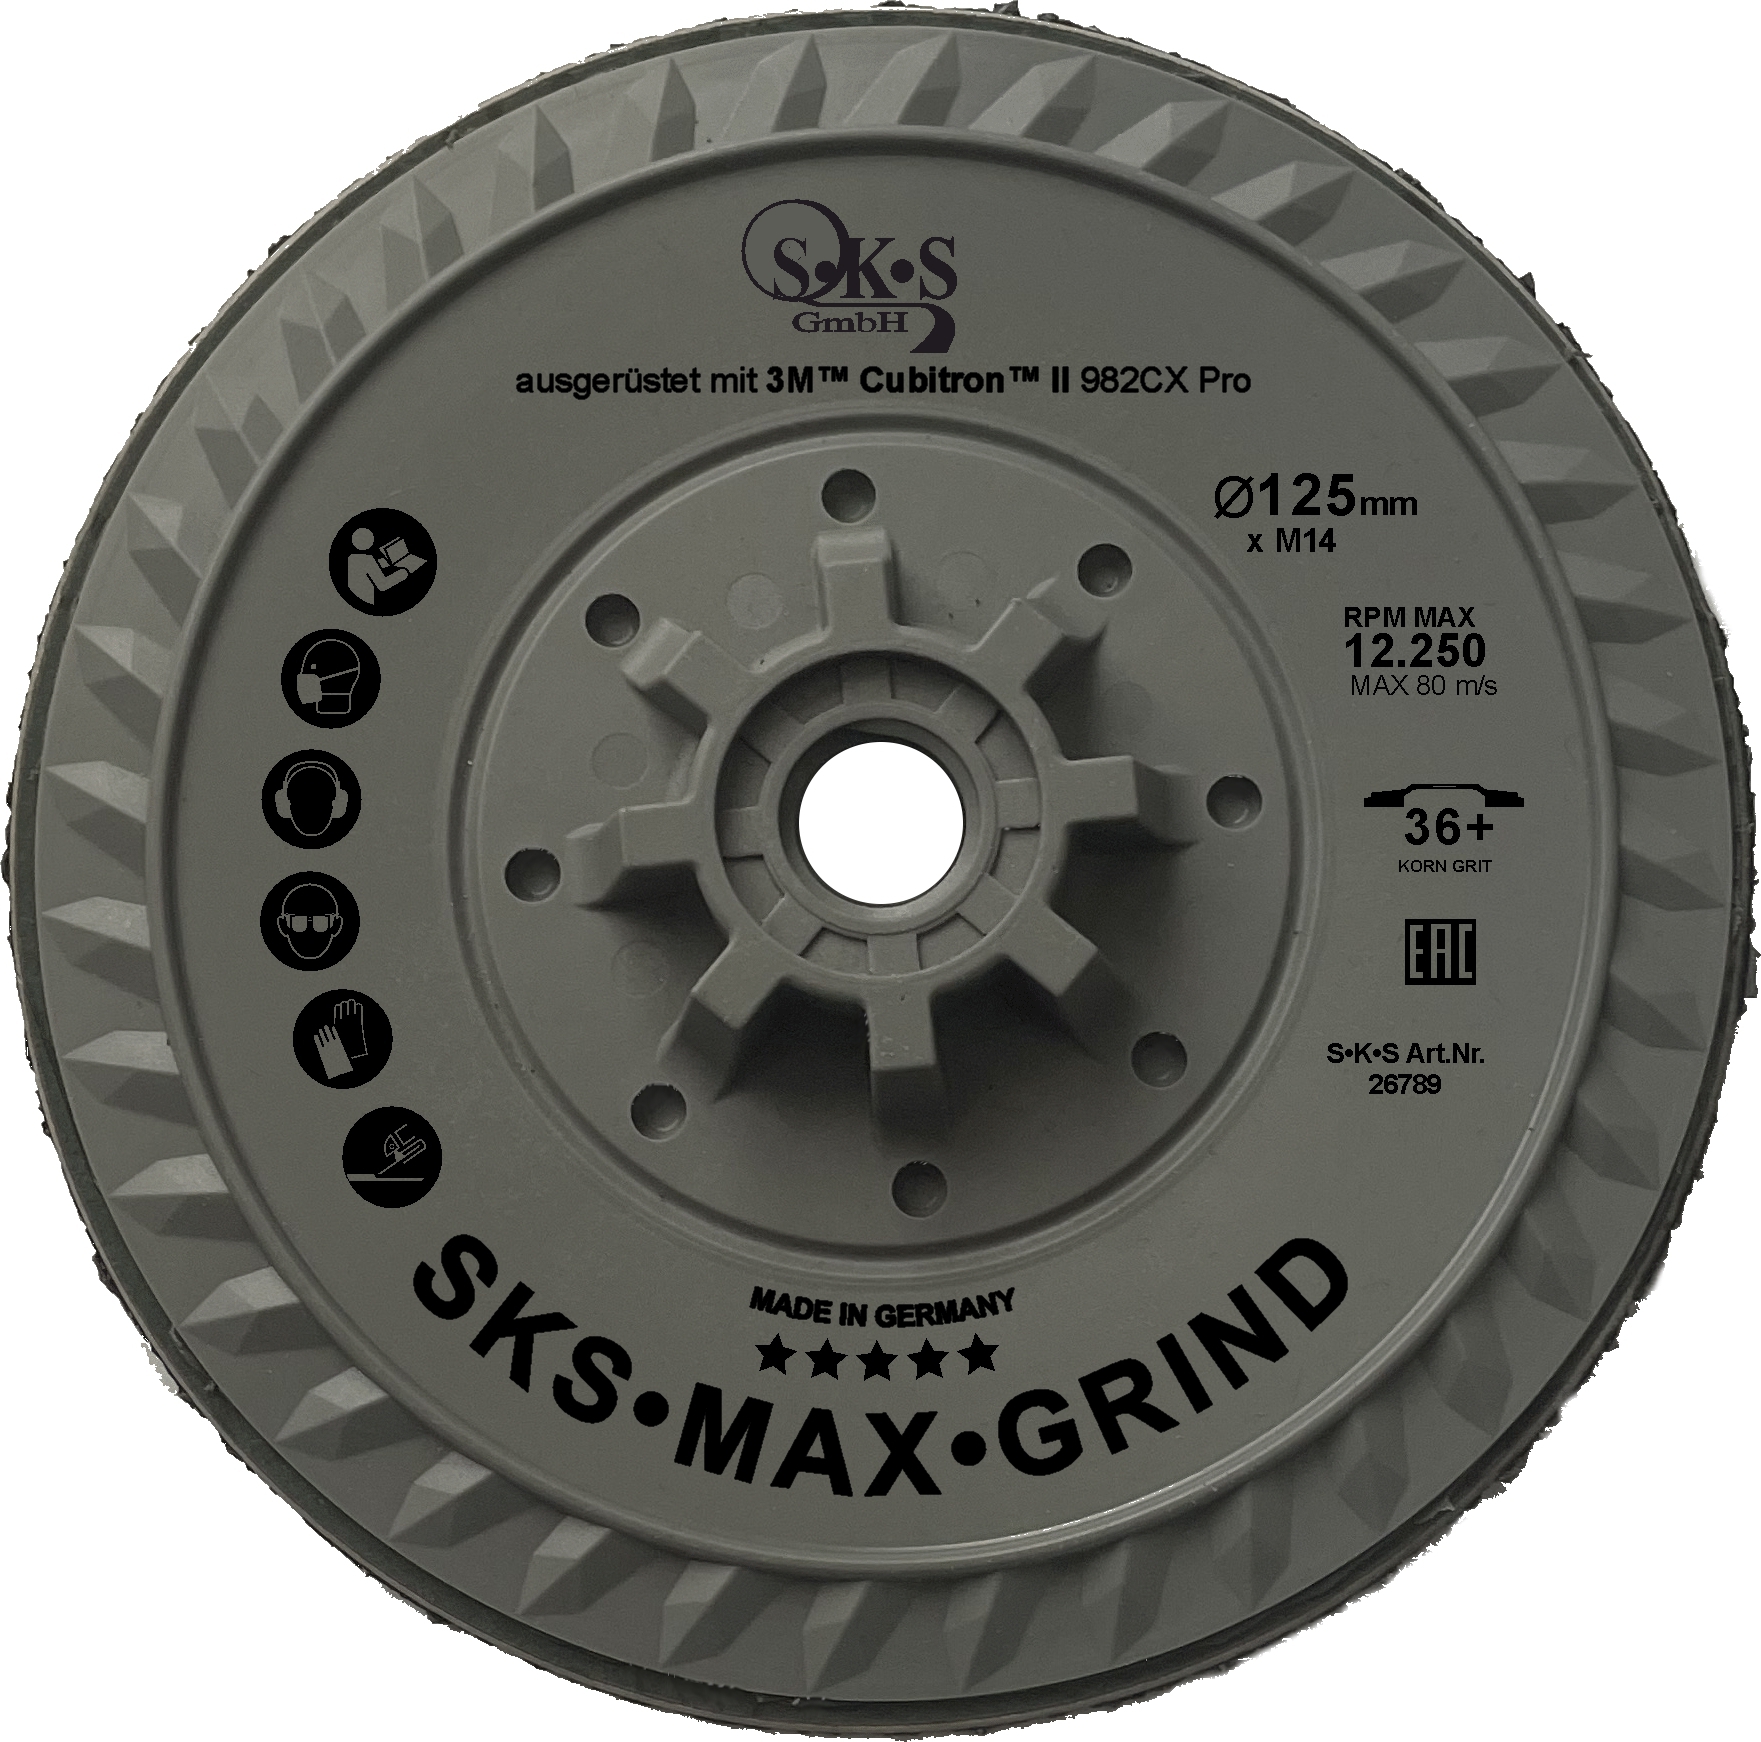 S-K-S Max Grind, 3M Cubitron II -kuitukiekko 982CX Pro, 125 mm, karkeus 36 , M14-kierteellä varustetut kiinnikkeet.